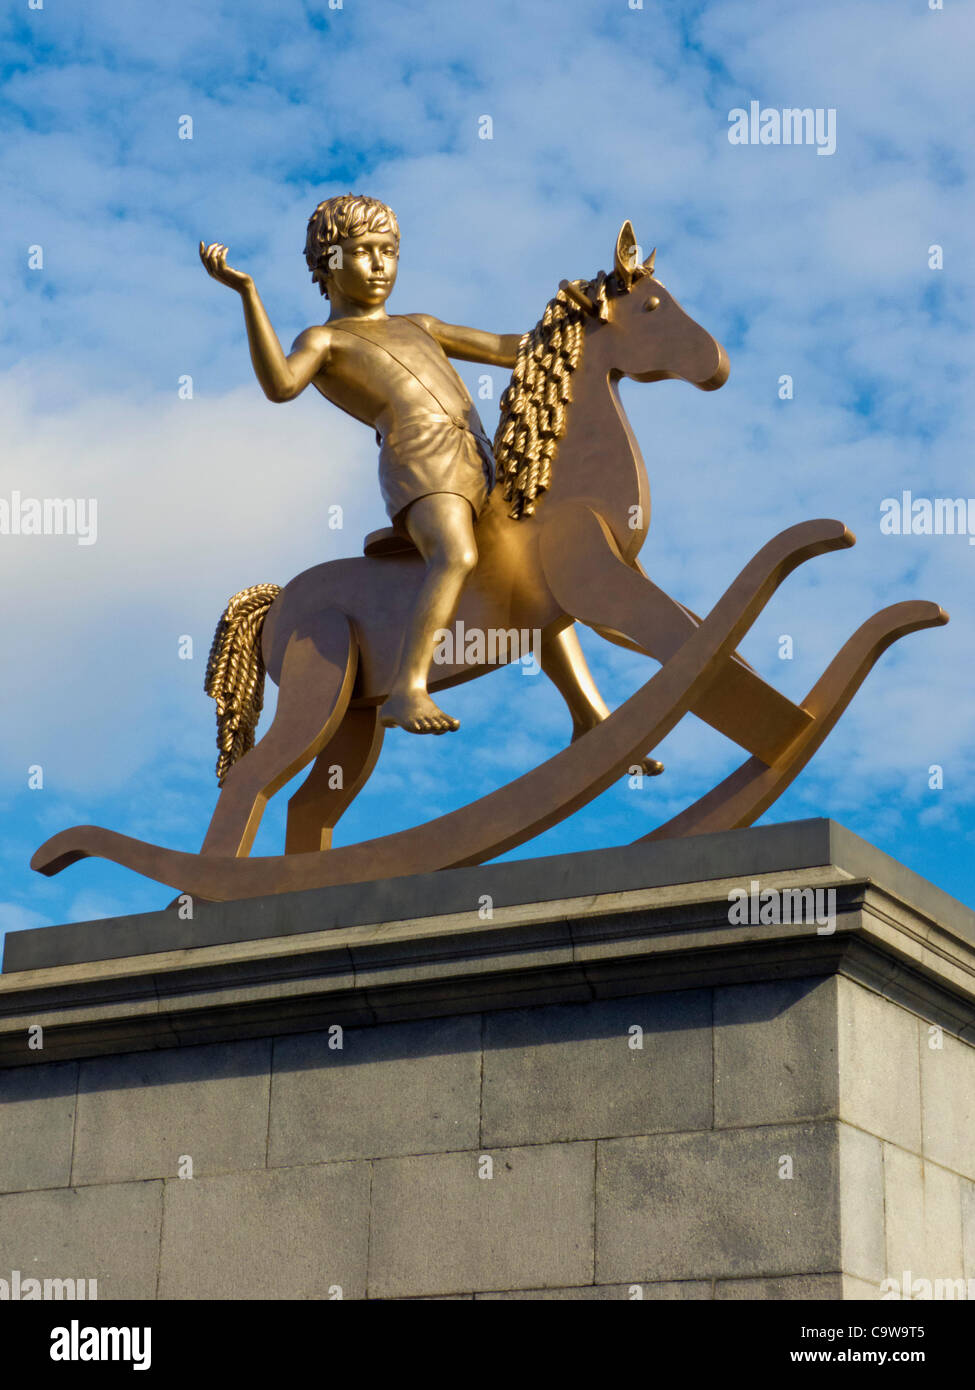 'Estructuras impotentes, Fig. 101' apodado "Golden Boy" por Michael Elmgreen & Ingar Dragset, Trafalgar Square del cuarto plinto desvelado por Joanna Lumley, London, UK, el jueves, 23 de febrero de 2012 Foto de stock